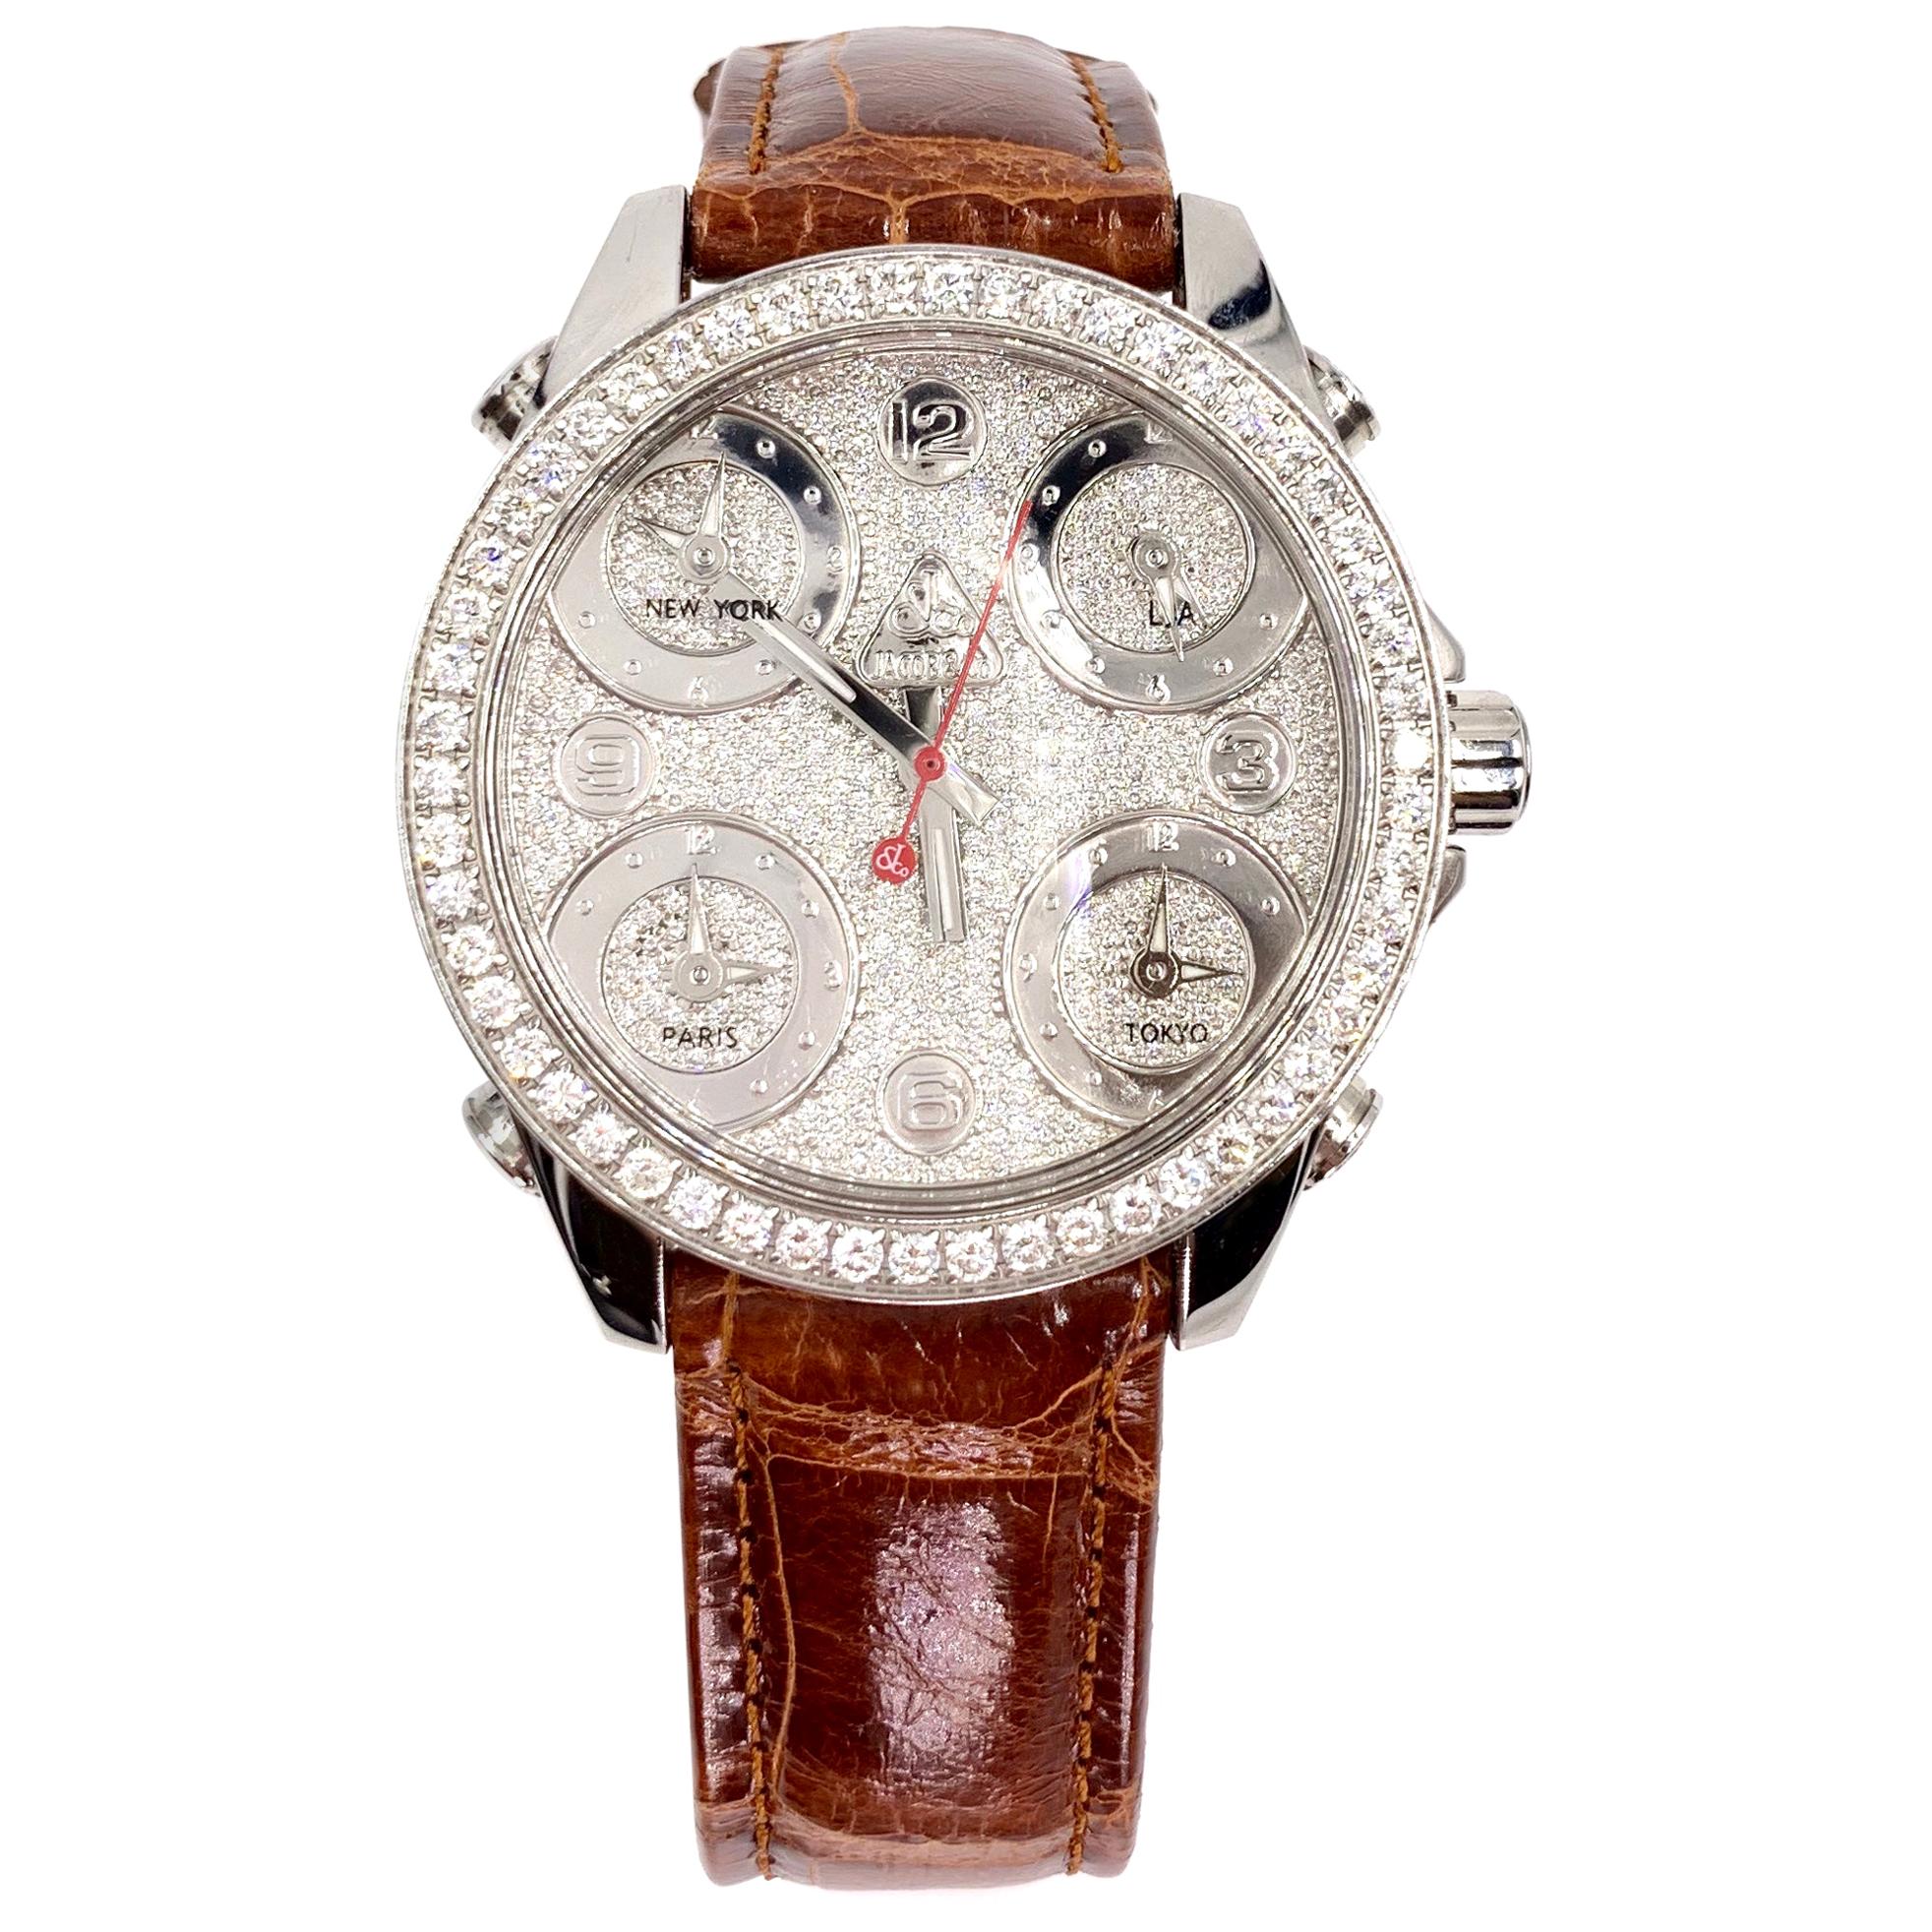 Jacob & Company 5 Time Zone Diamond Watch